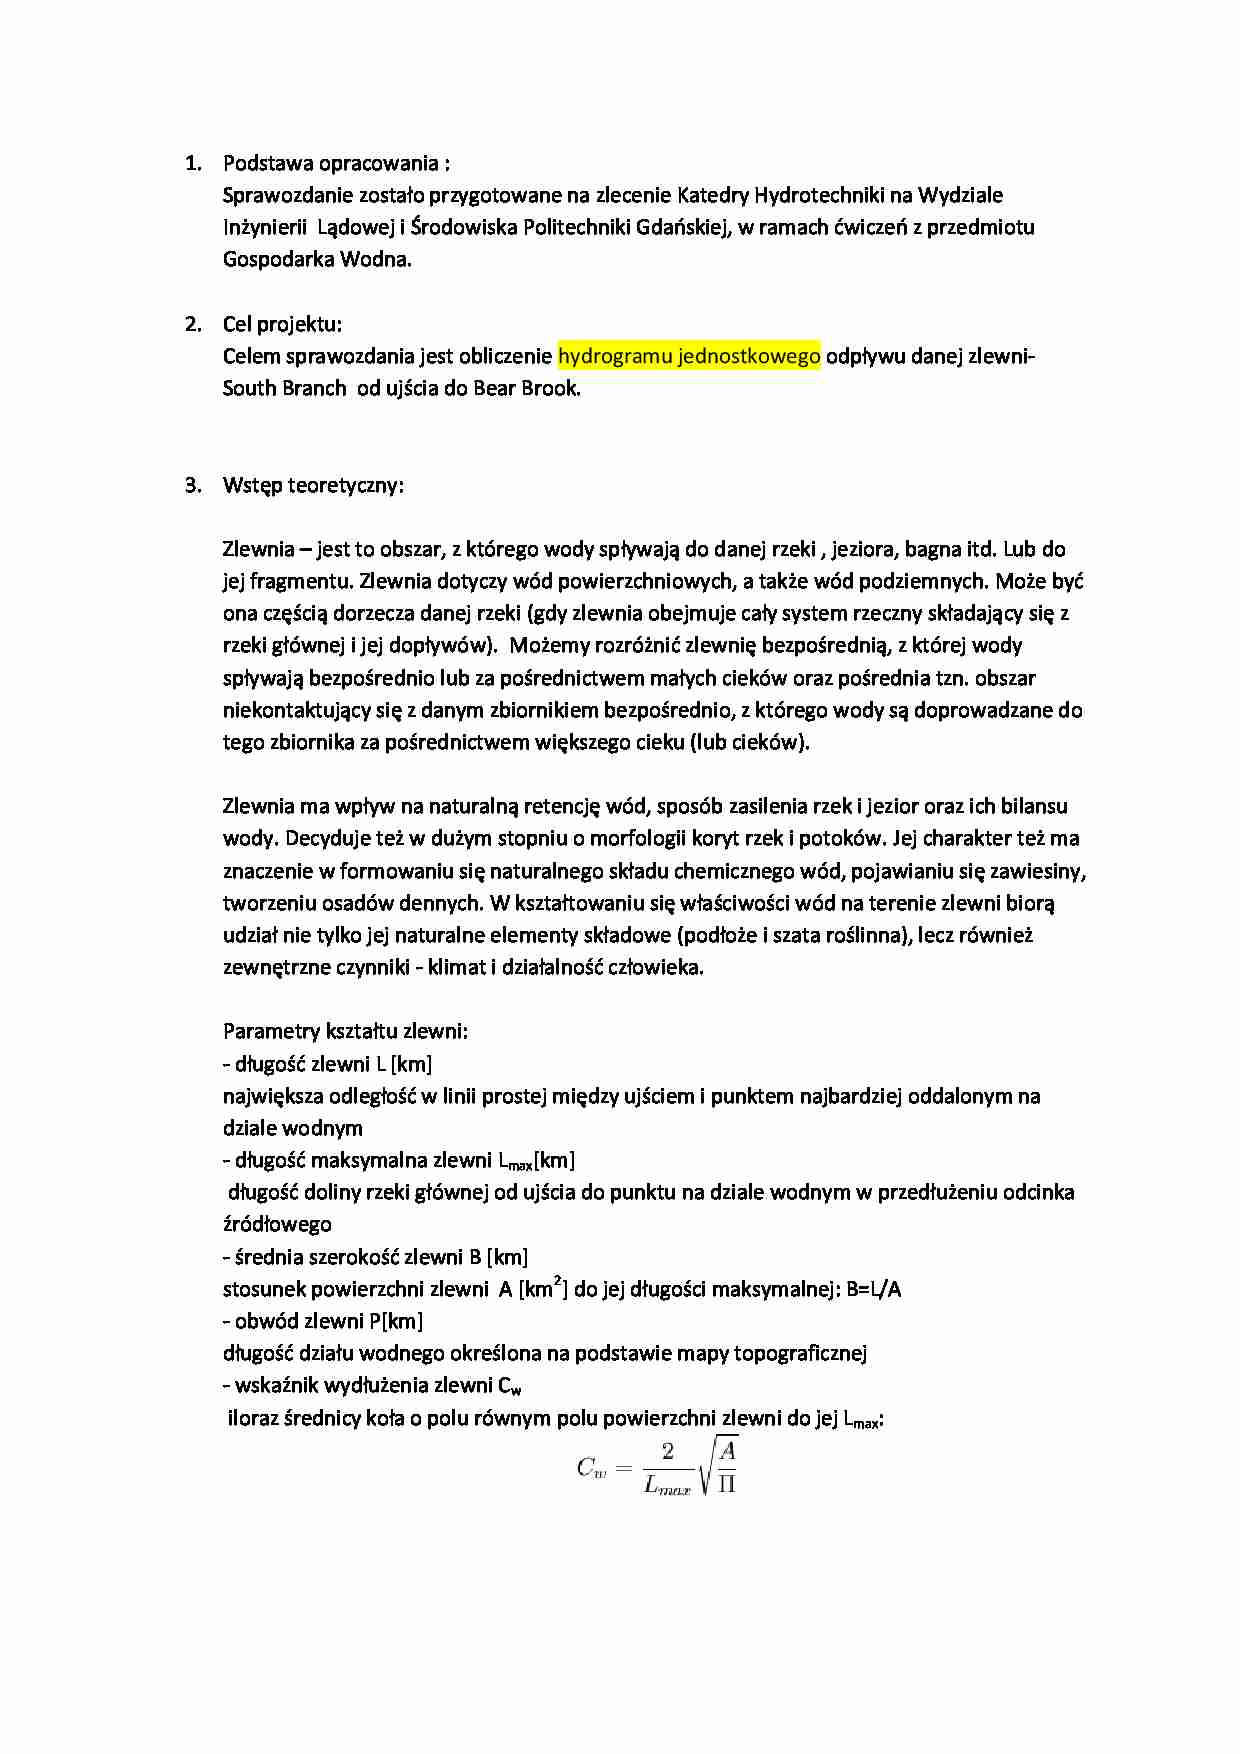 Obliczania hydrogramu jednostkowego - sprawozdanie - strona 1